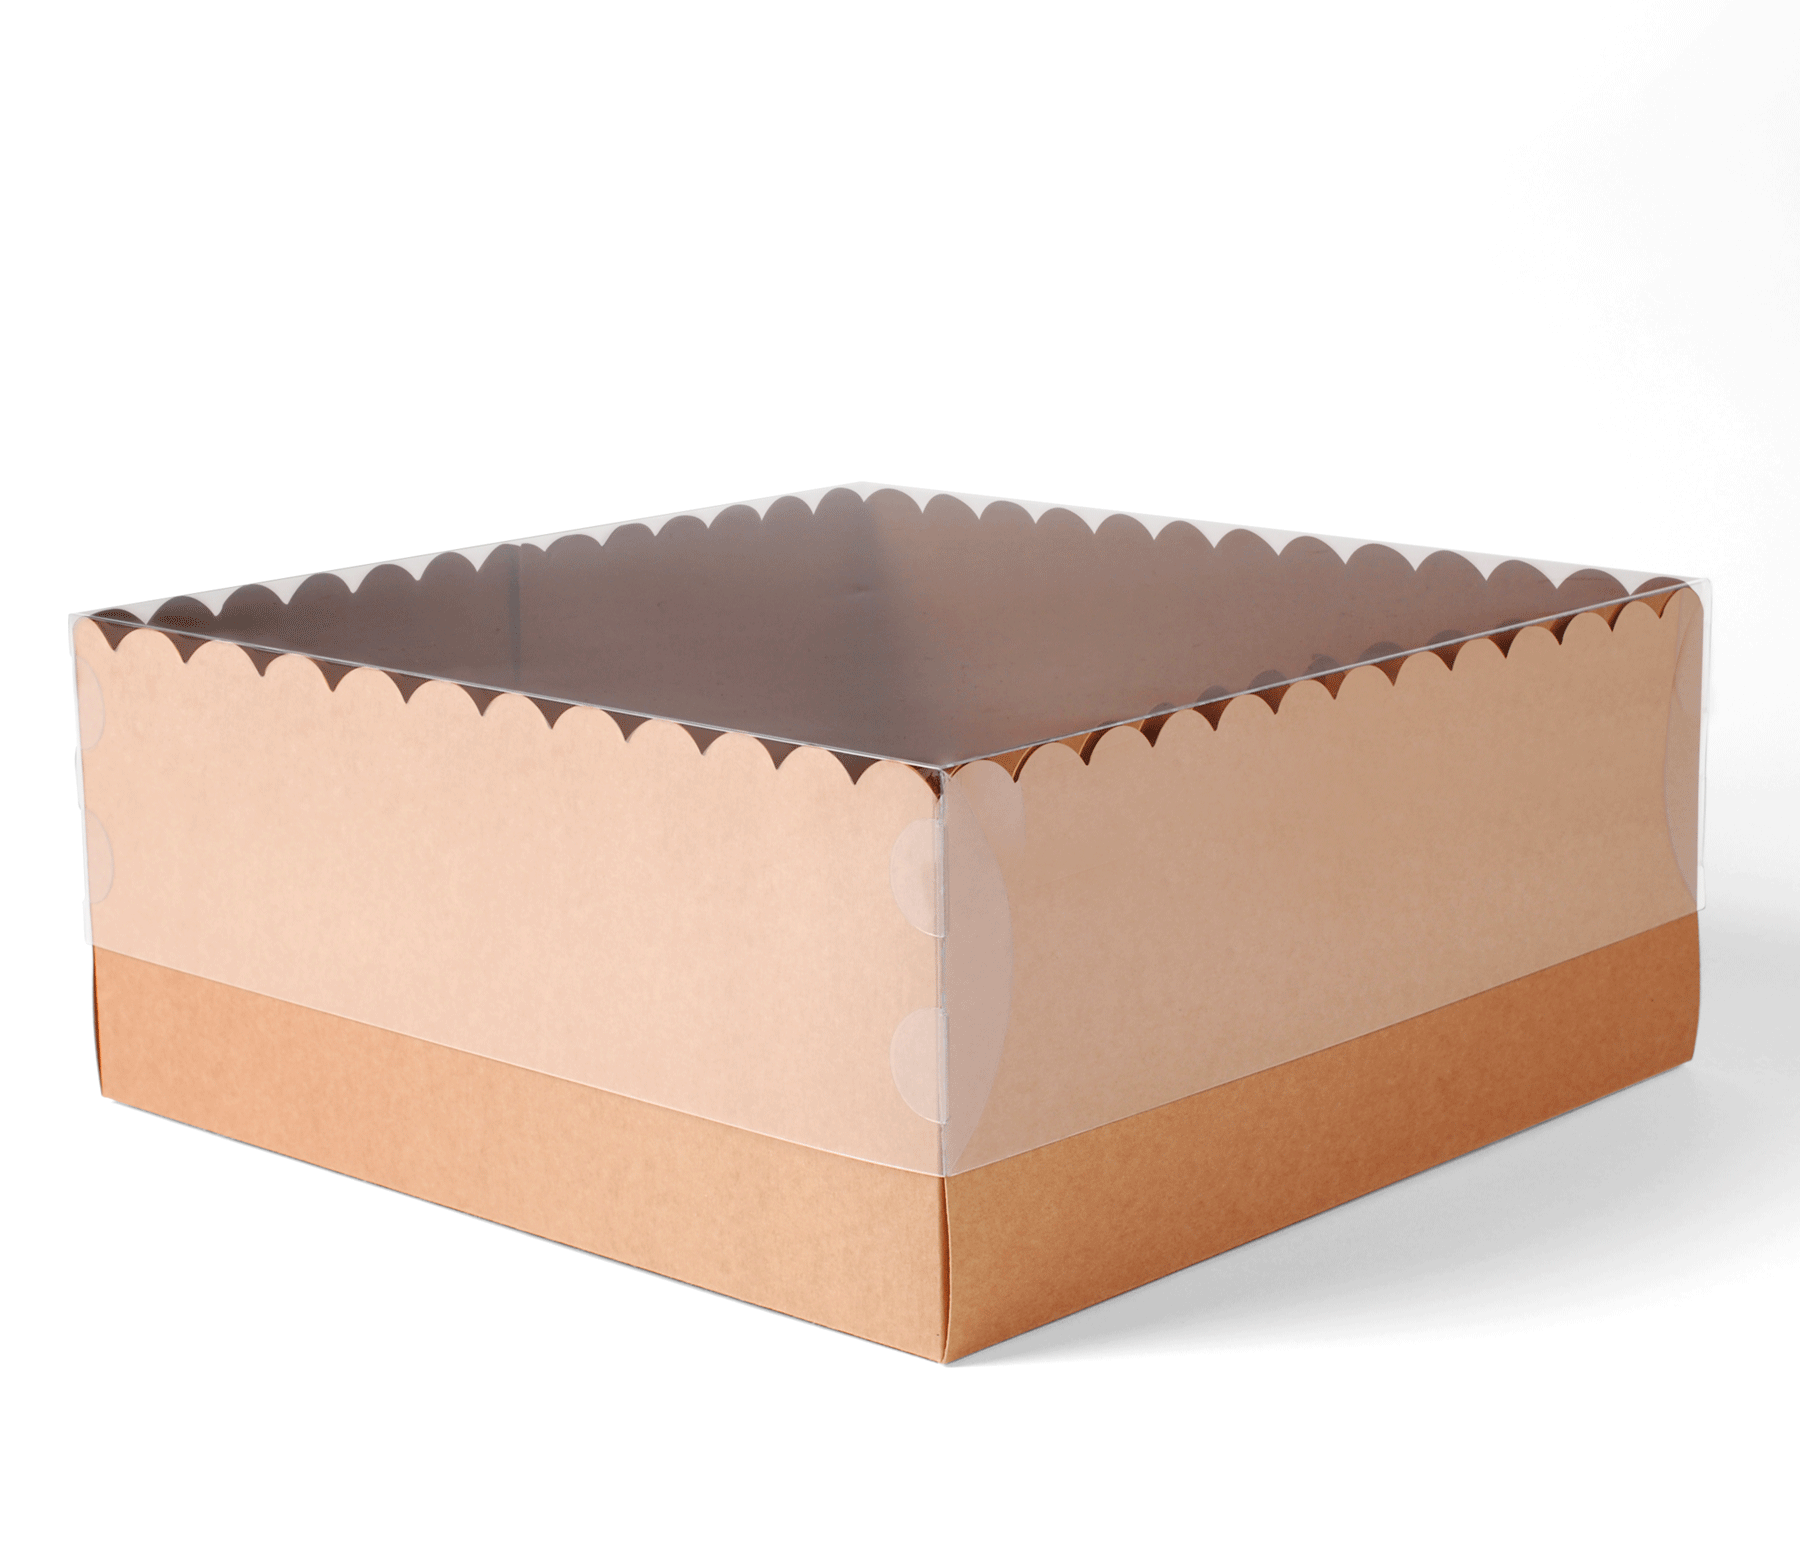 Caja de cartón para trasportar tartas